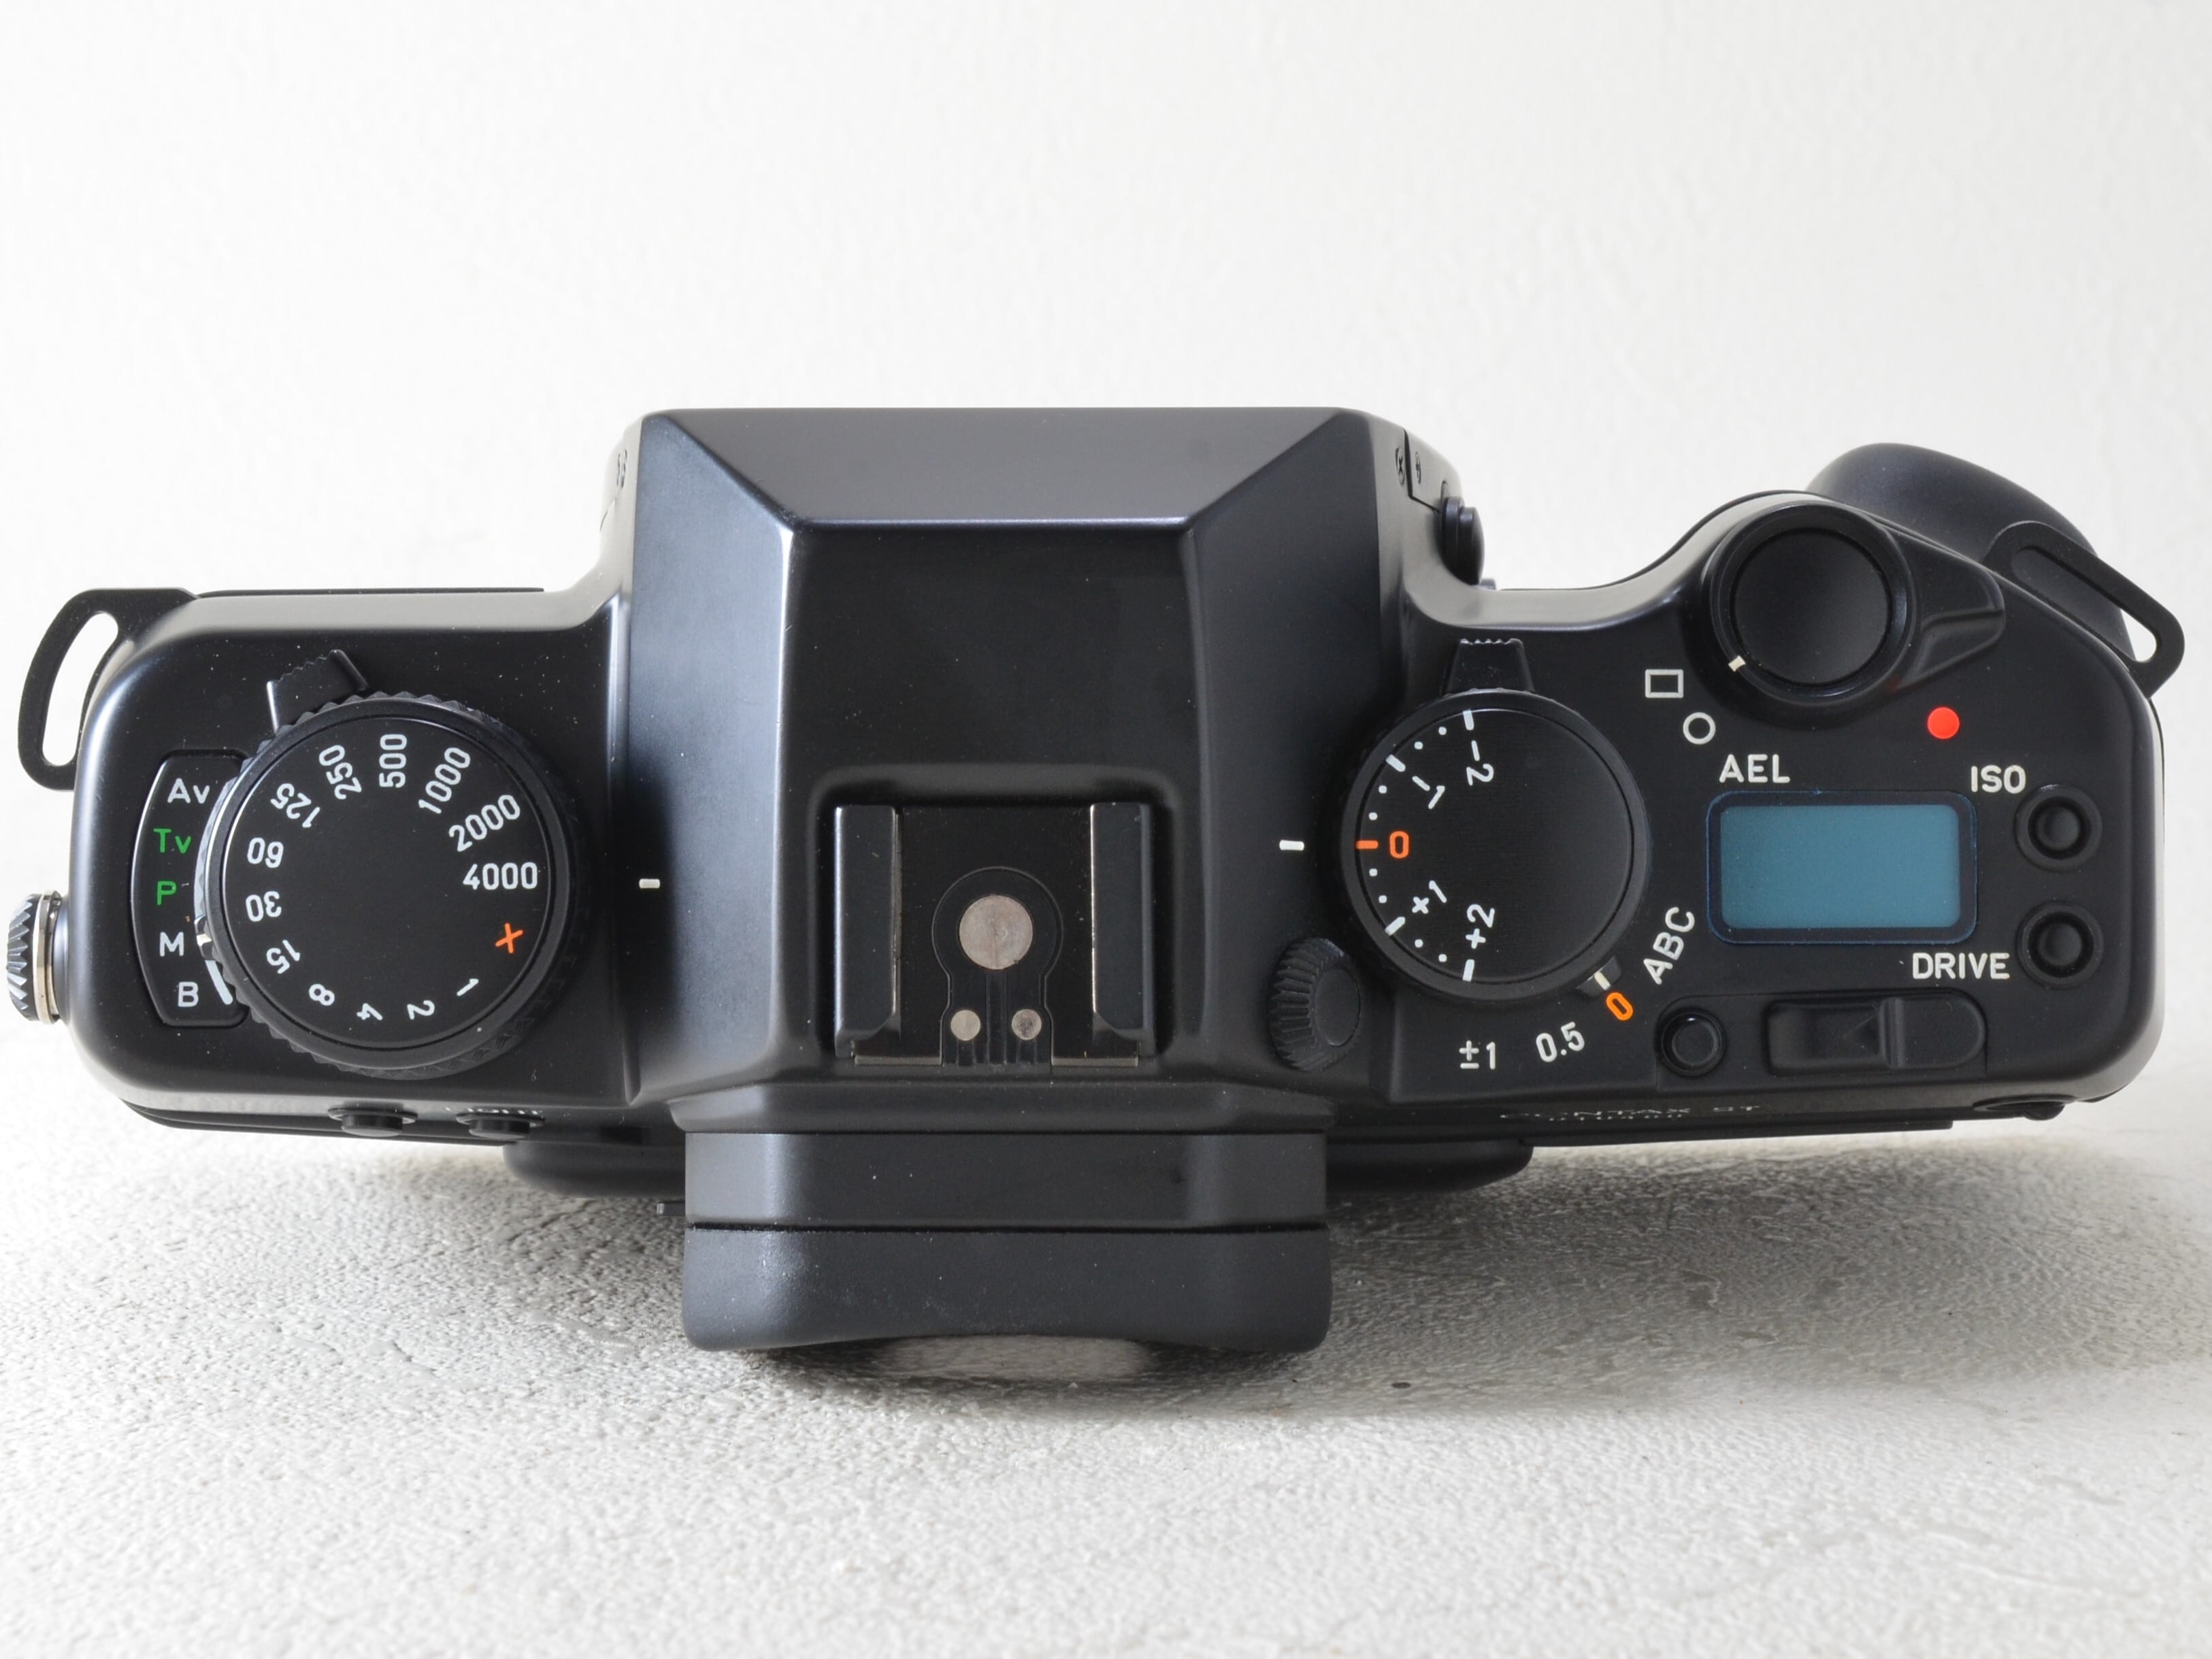 Contax RX 高級フィルムカメラボディ マニュアル付  整備済